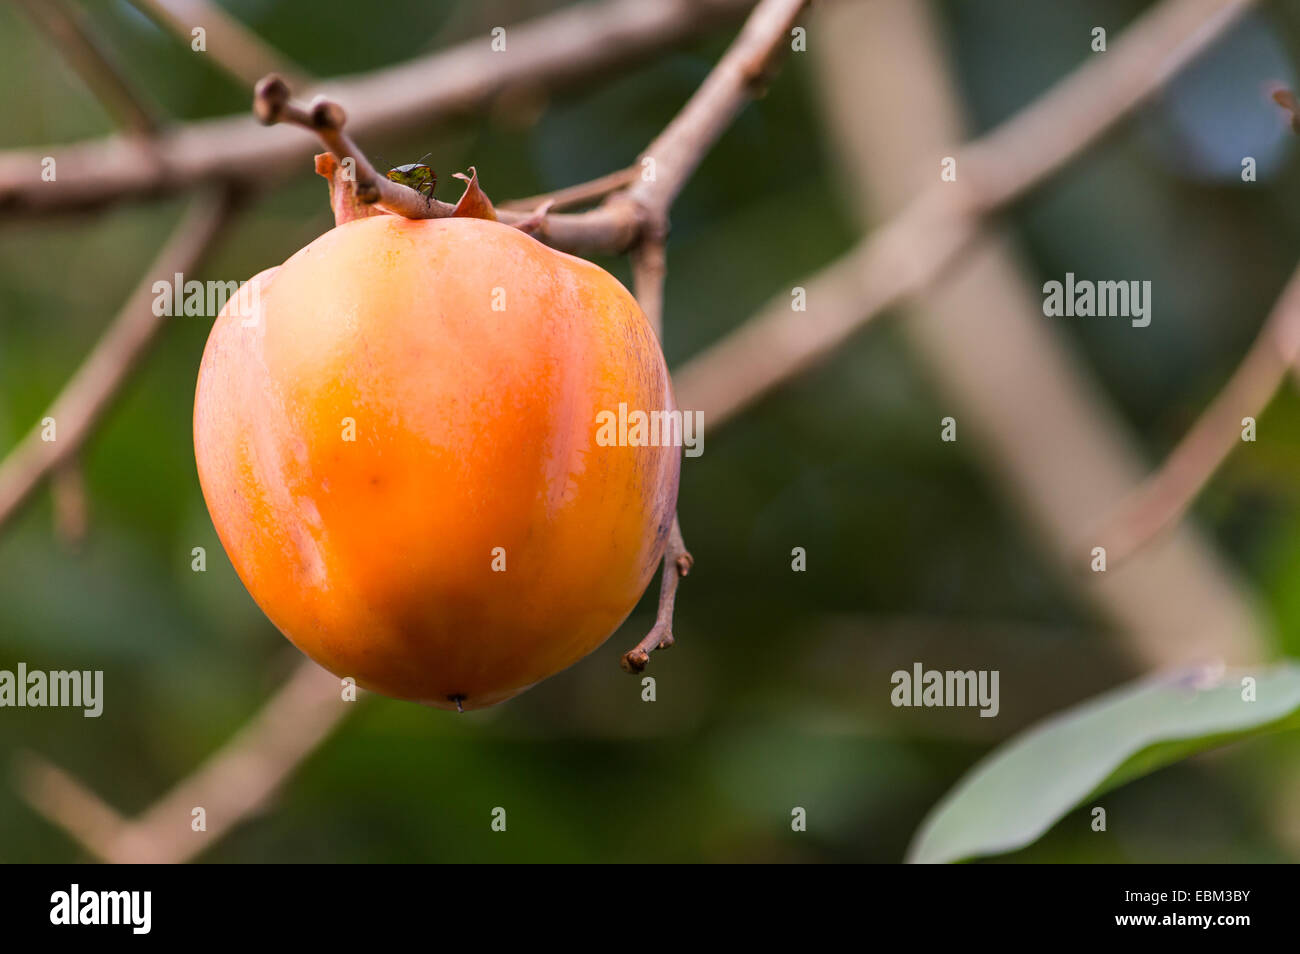 Fruto de caqui en un hermoso color naranja Foto de stock